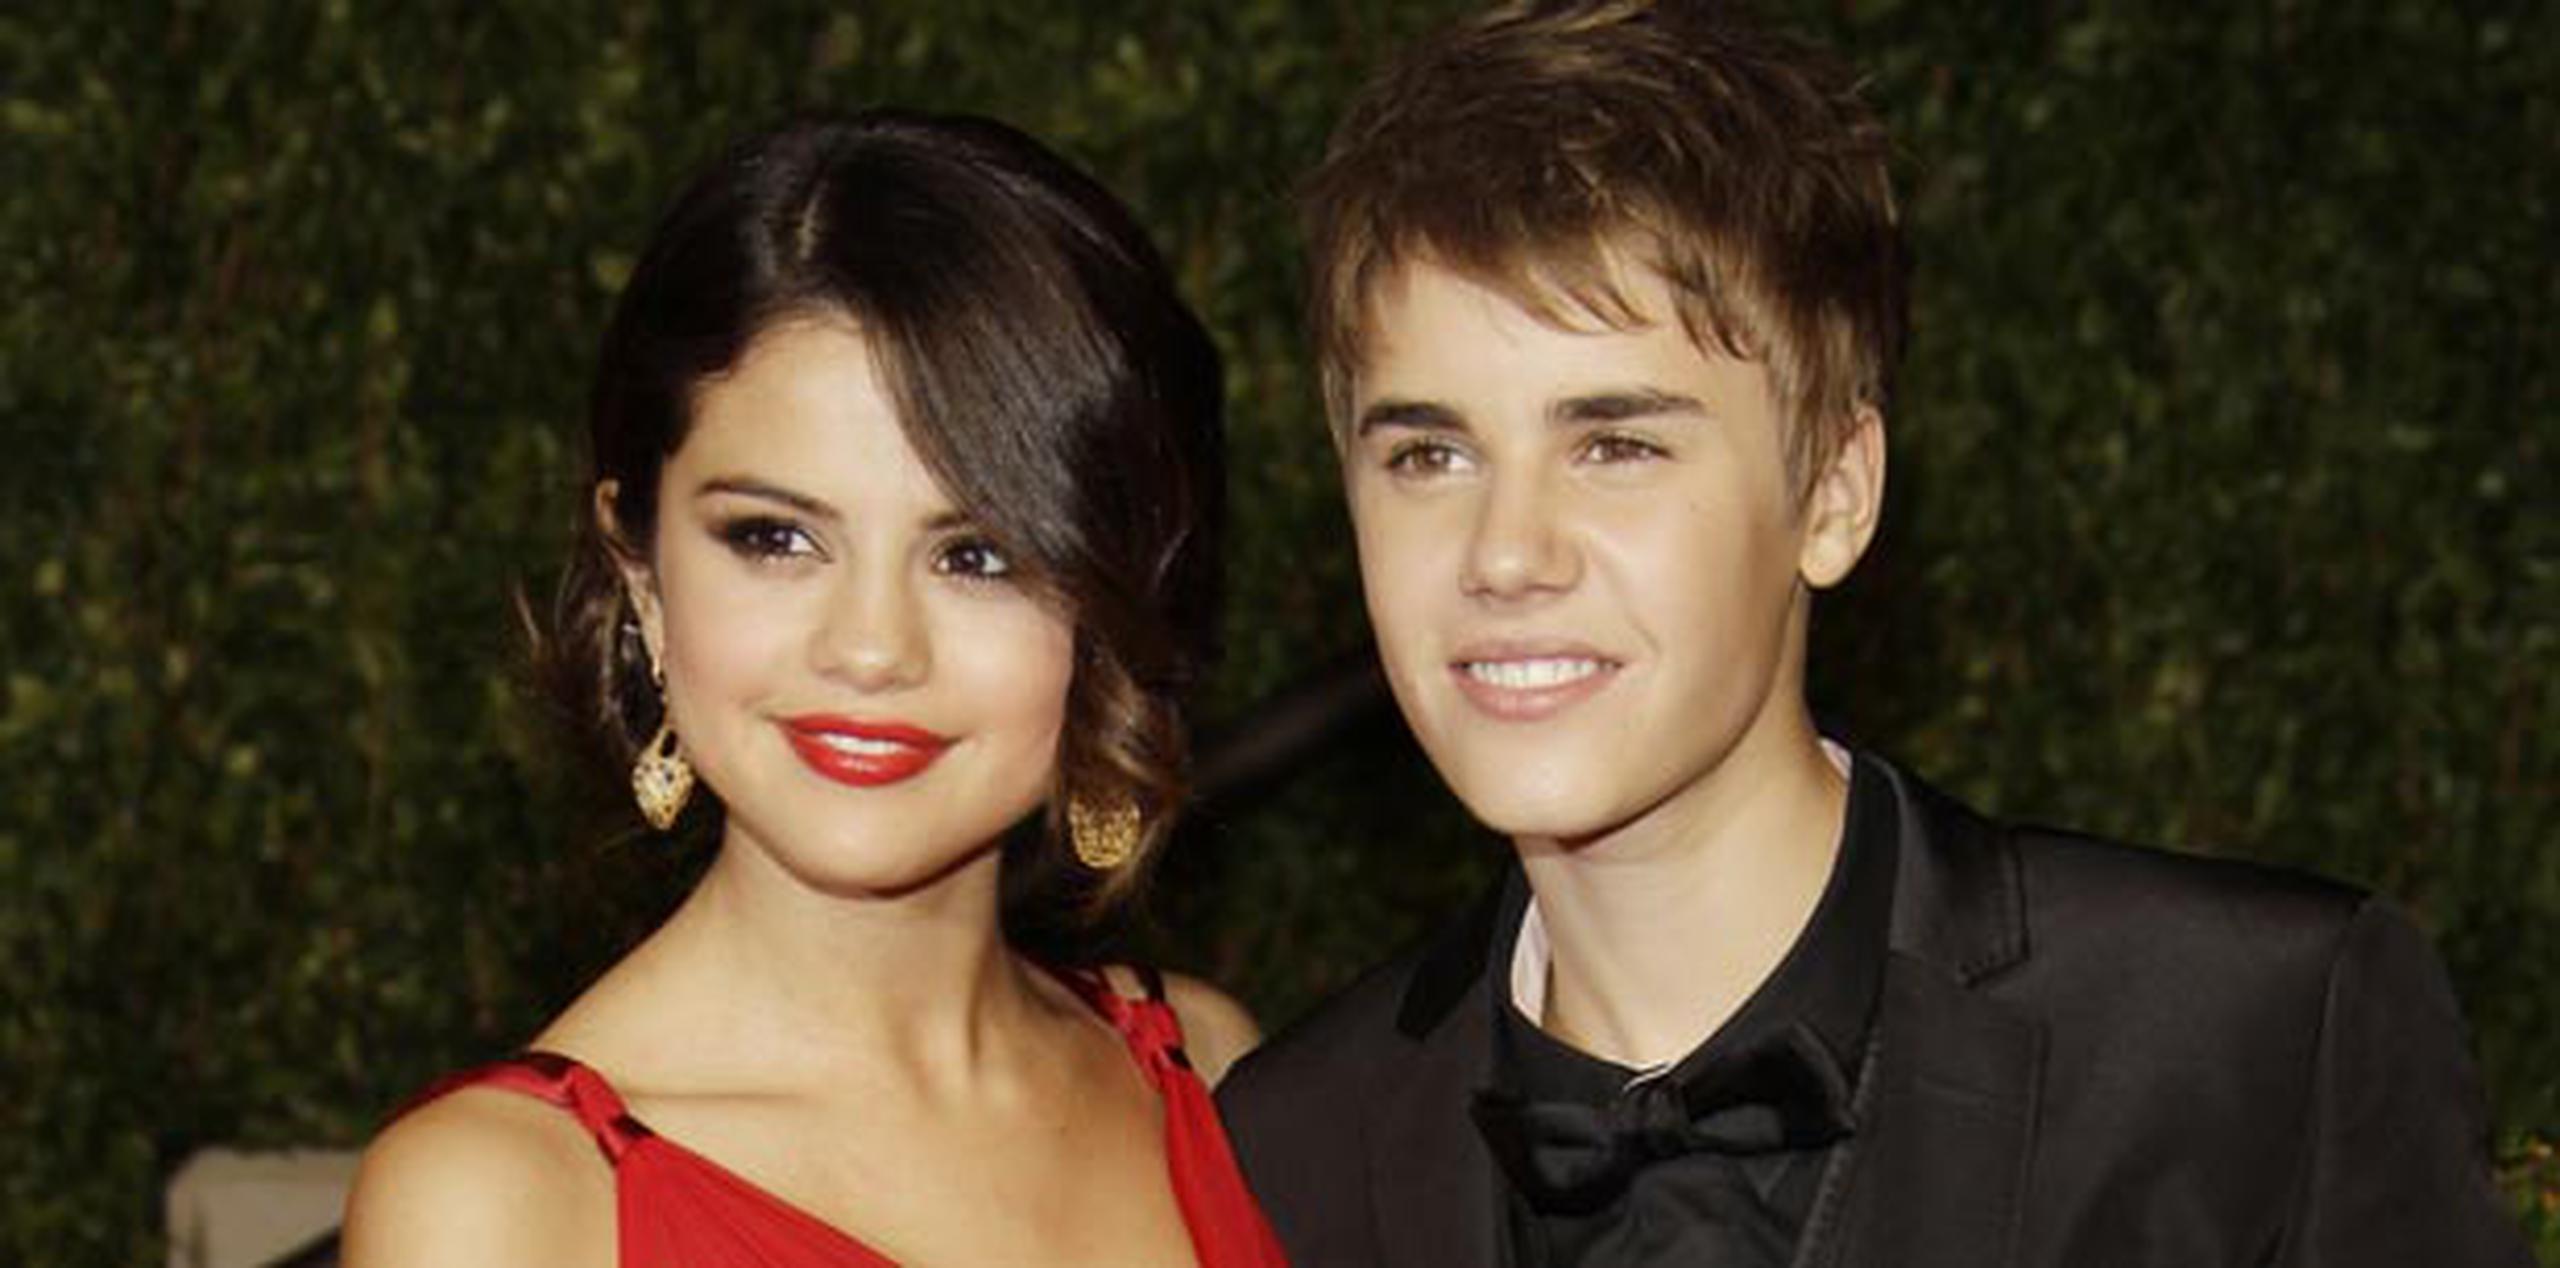 Bieber, de 20 años, y la actriz, de 21, comenzaron a salir en 2010 y tuvieron una relación de casi dos años. (Archivo)